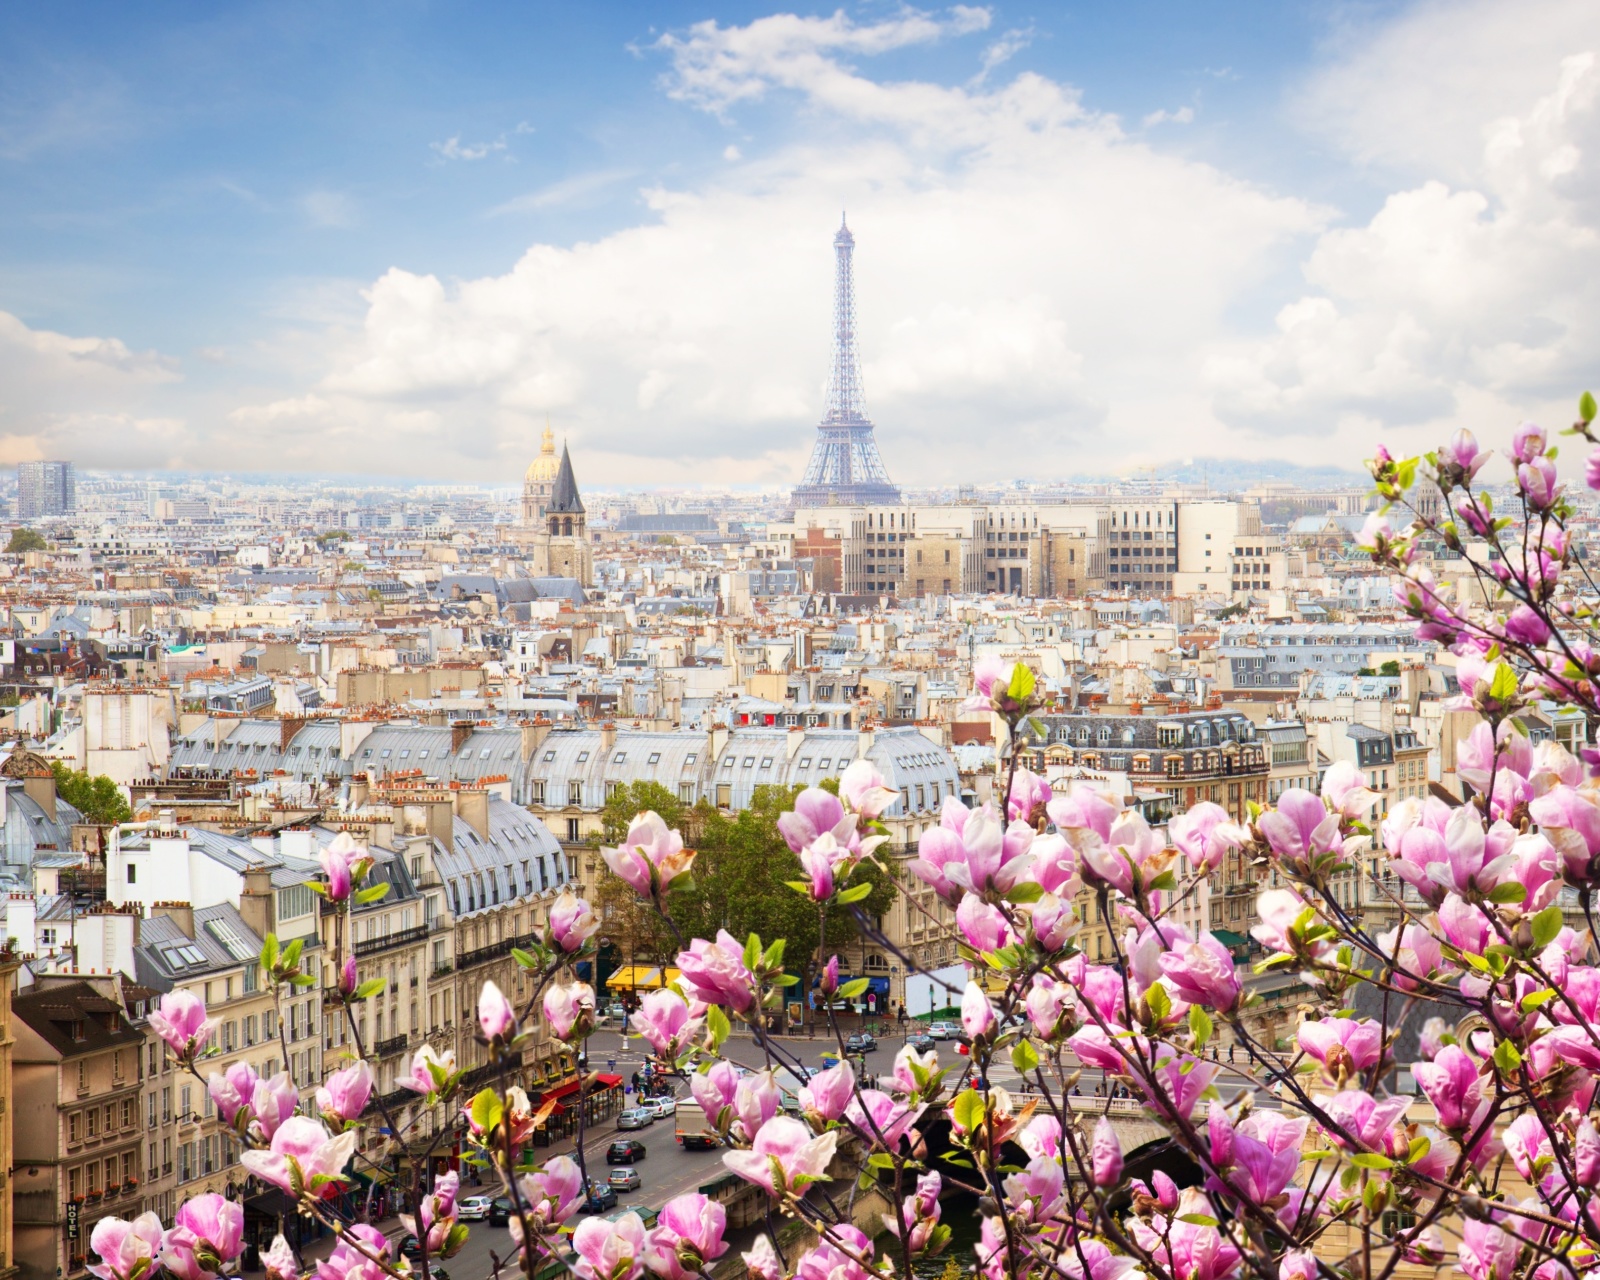 Обои Paris Sakura Location for Instagram 1600x1280